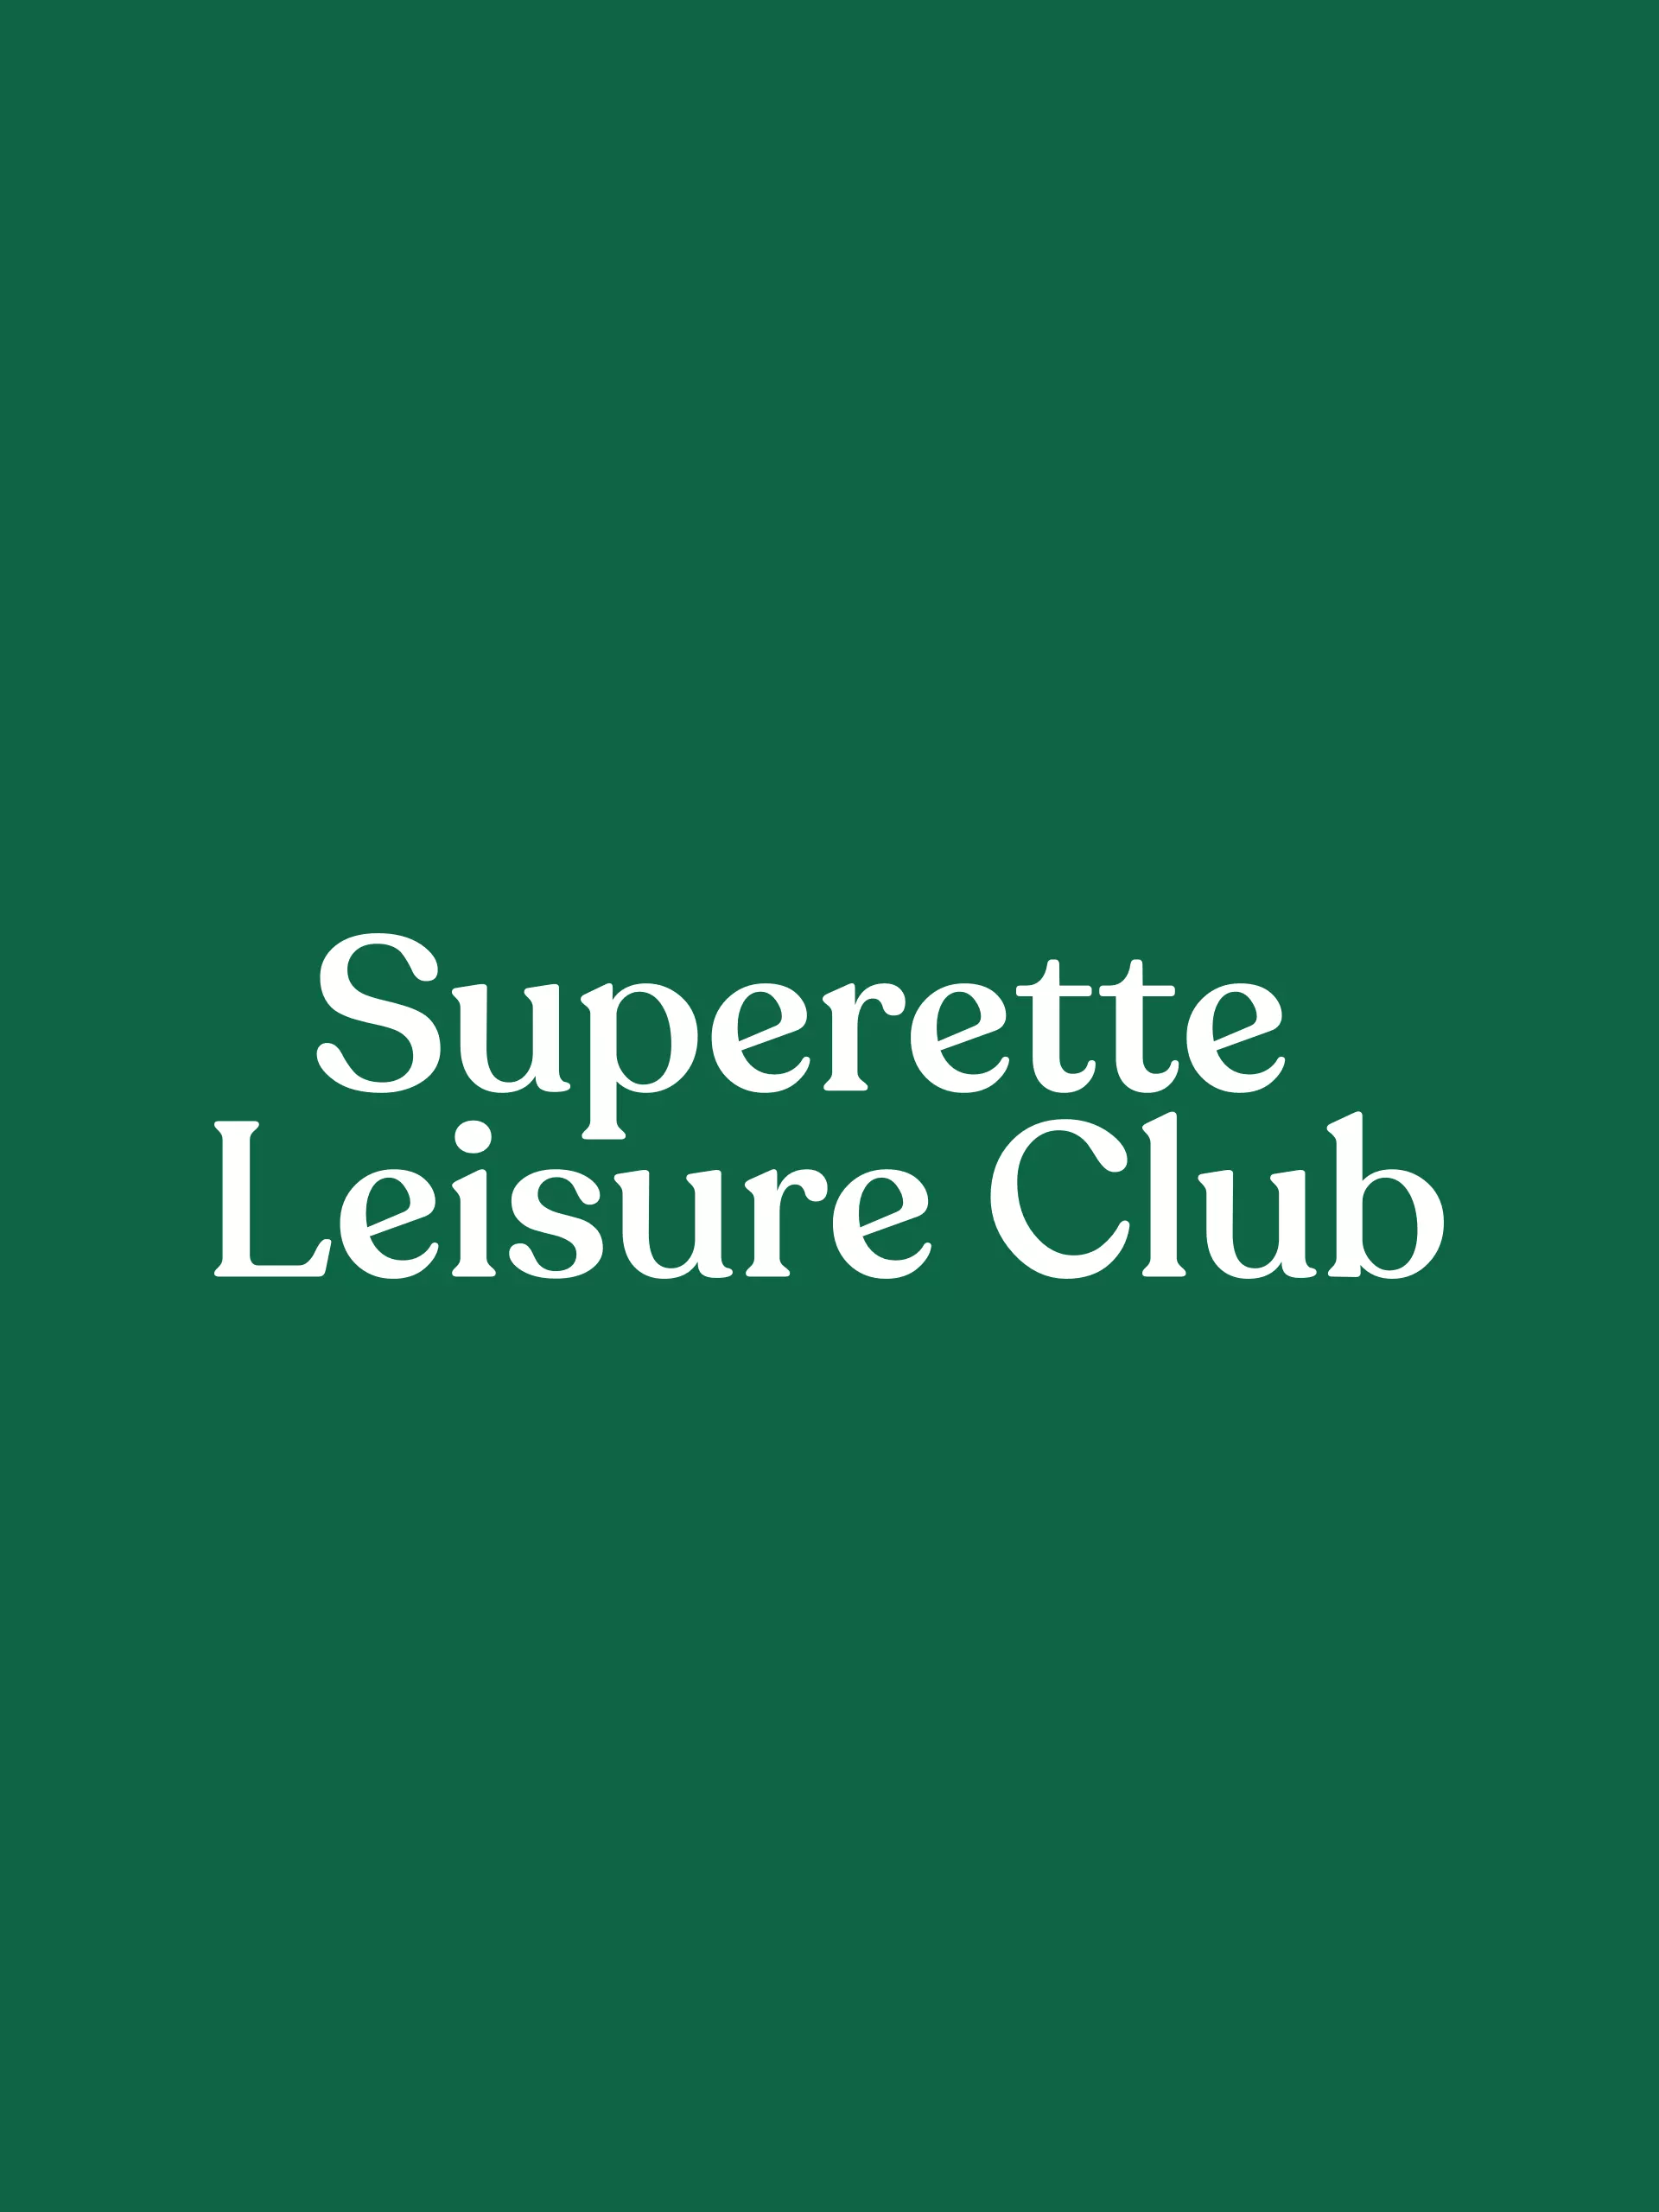 superette-leisure-club-kanook-studio4